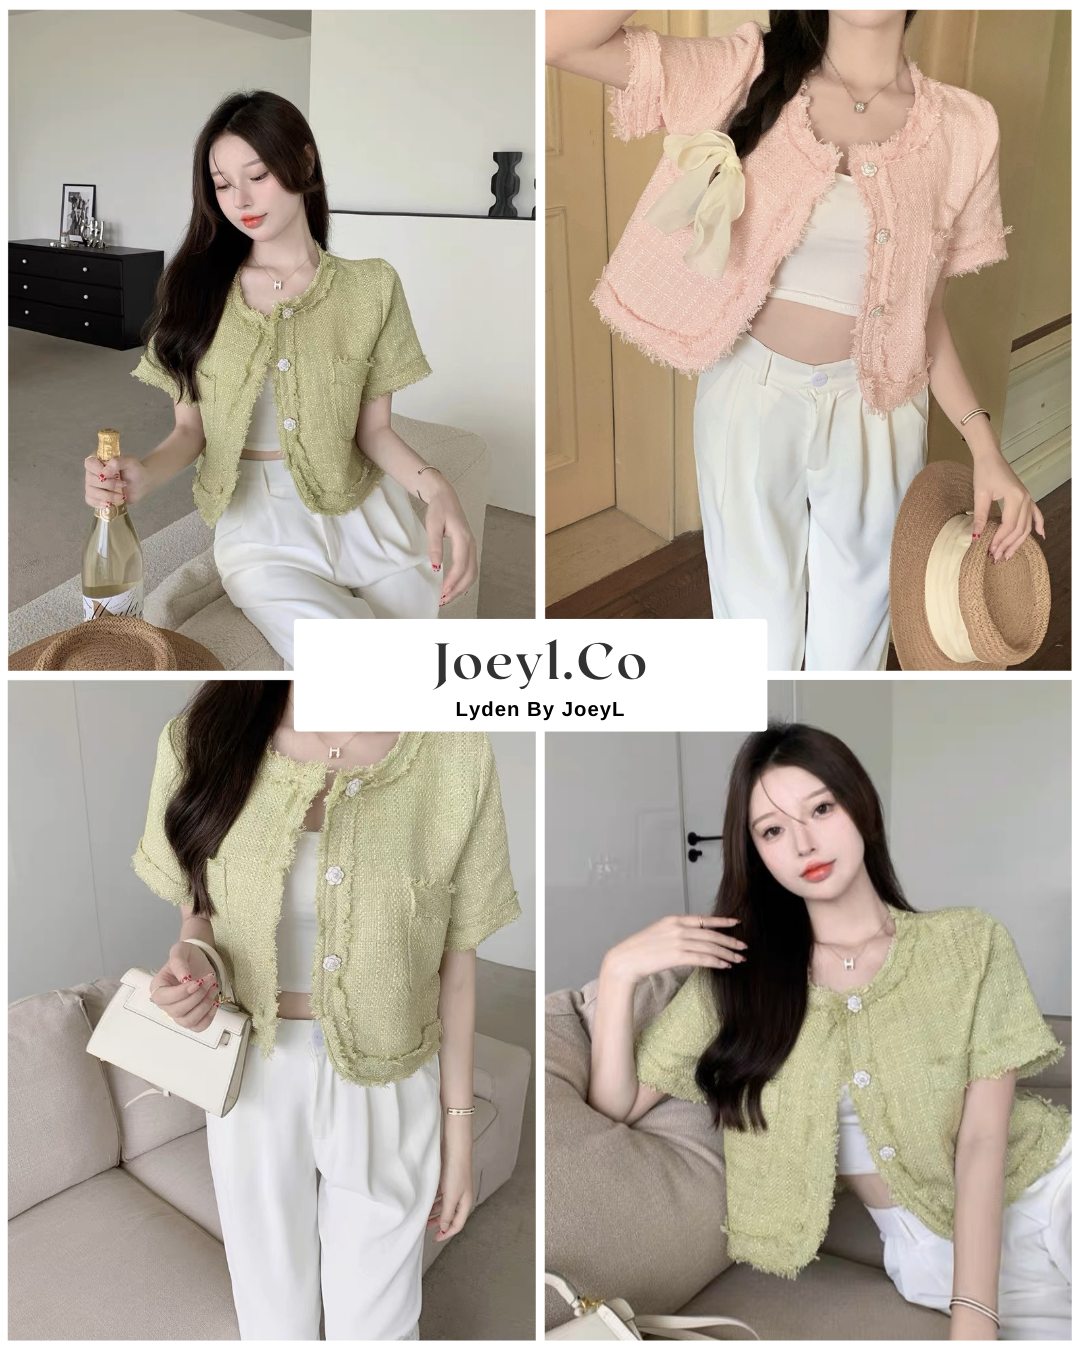 Joeyl.co-Ladies Tweet Outerwear & blouse